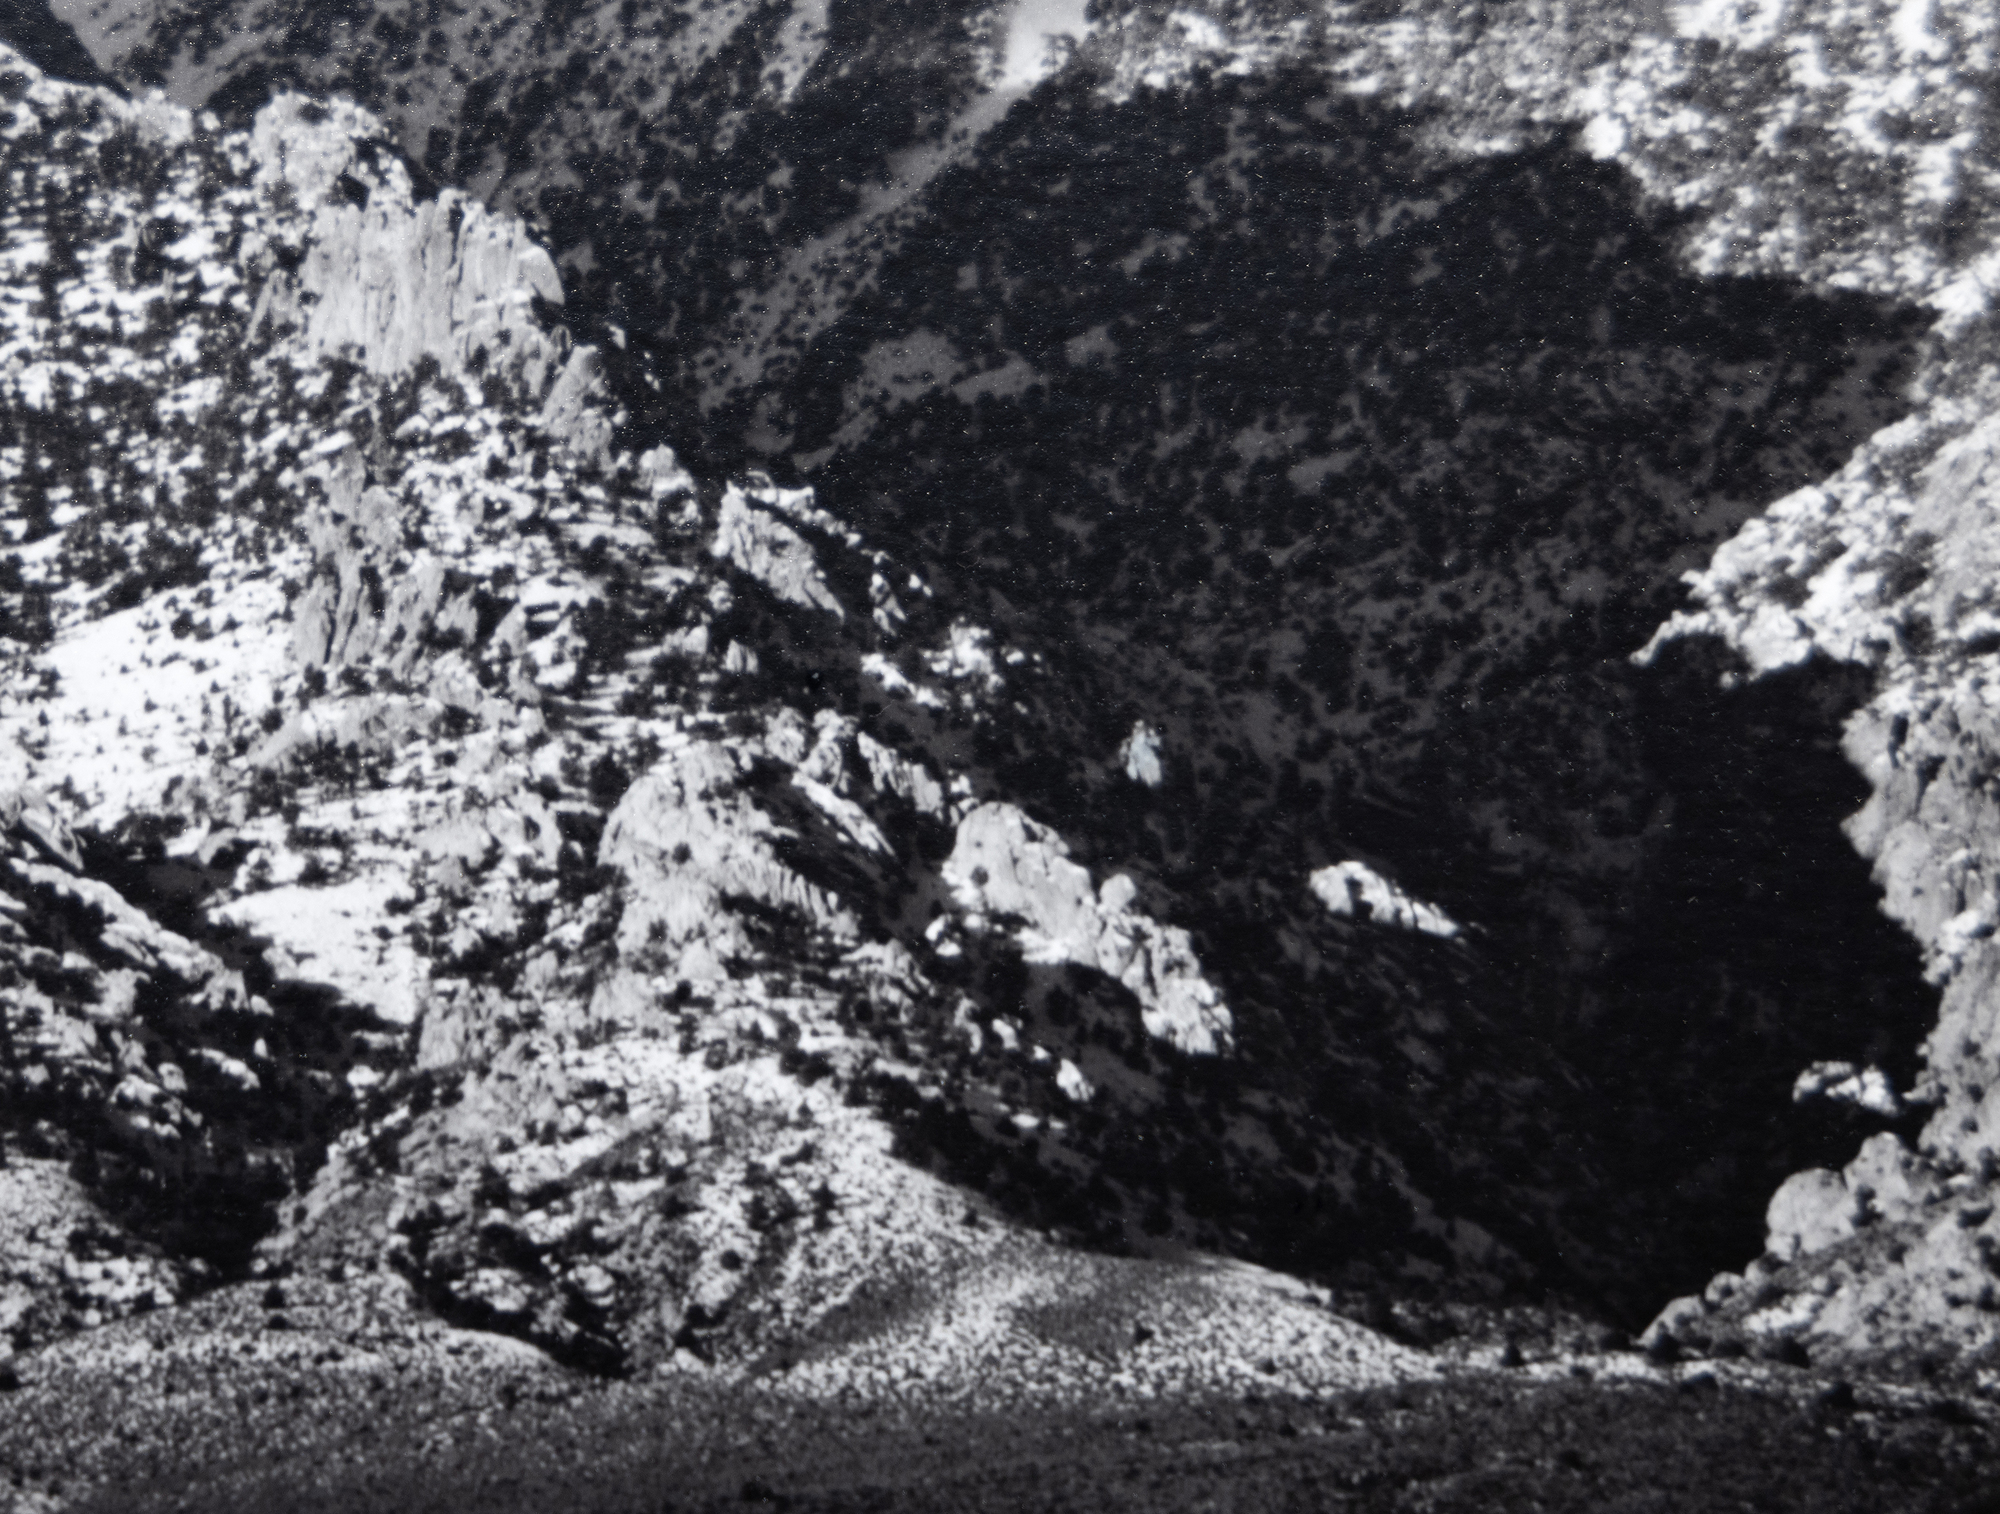 يحمل استكشاف أنسل آدامز لوادي أوينز ومناظر الجانب الشرقي الشاهق لجبال سييرا نيفادا أهمية كبيرة. إنها من بين الصور الأكثر شهرة التي سمحت لآدامز بالتقاط العظمة الكاسحة لسييرا نيفادا مع إعطاء انطباع حي عن عمق وامتداد قاع الوادي القاحل. من المحتمل أن يكون جبل ويليامسون ، سييرا نيفادا ، من وادي أوينز ، قد تم تصويره في عام 1944 ، بعد وقت قصير من دمج نظام المنطقة الذي سمح بنطاق نغمي واسع وتعريض متوازن مع وضوح في كل من الإبرازات والظلال. المثال الحالي ، الذي طبع في أغسطس 1978 ، موجود في مجموعة العديد من المتاحف ، ولكن بين هواة الجمع ، فهو من بين المطبوعات النادرة التي كتبها أنسل آدامز.